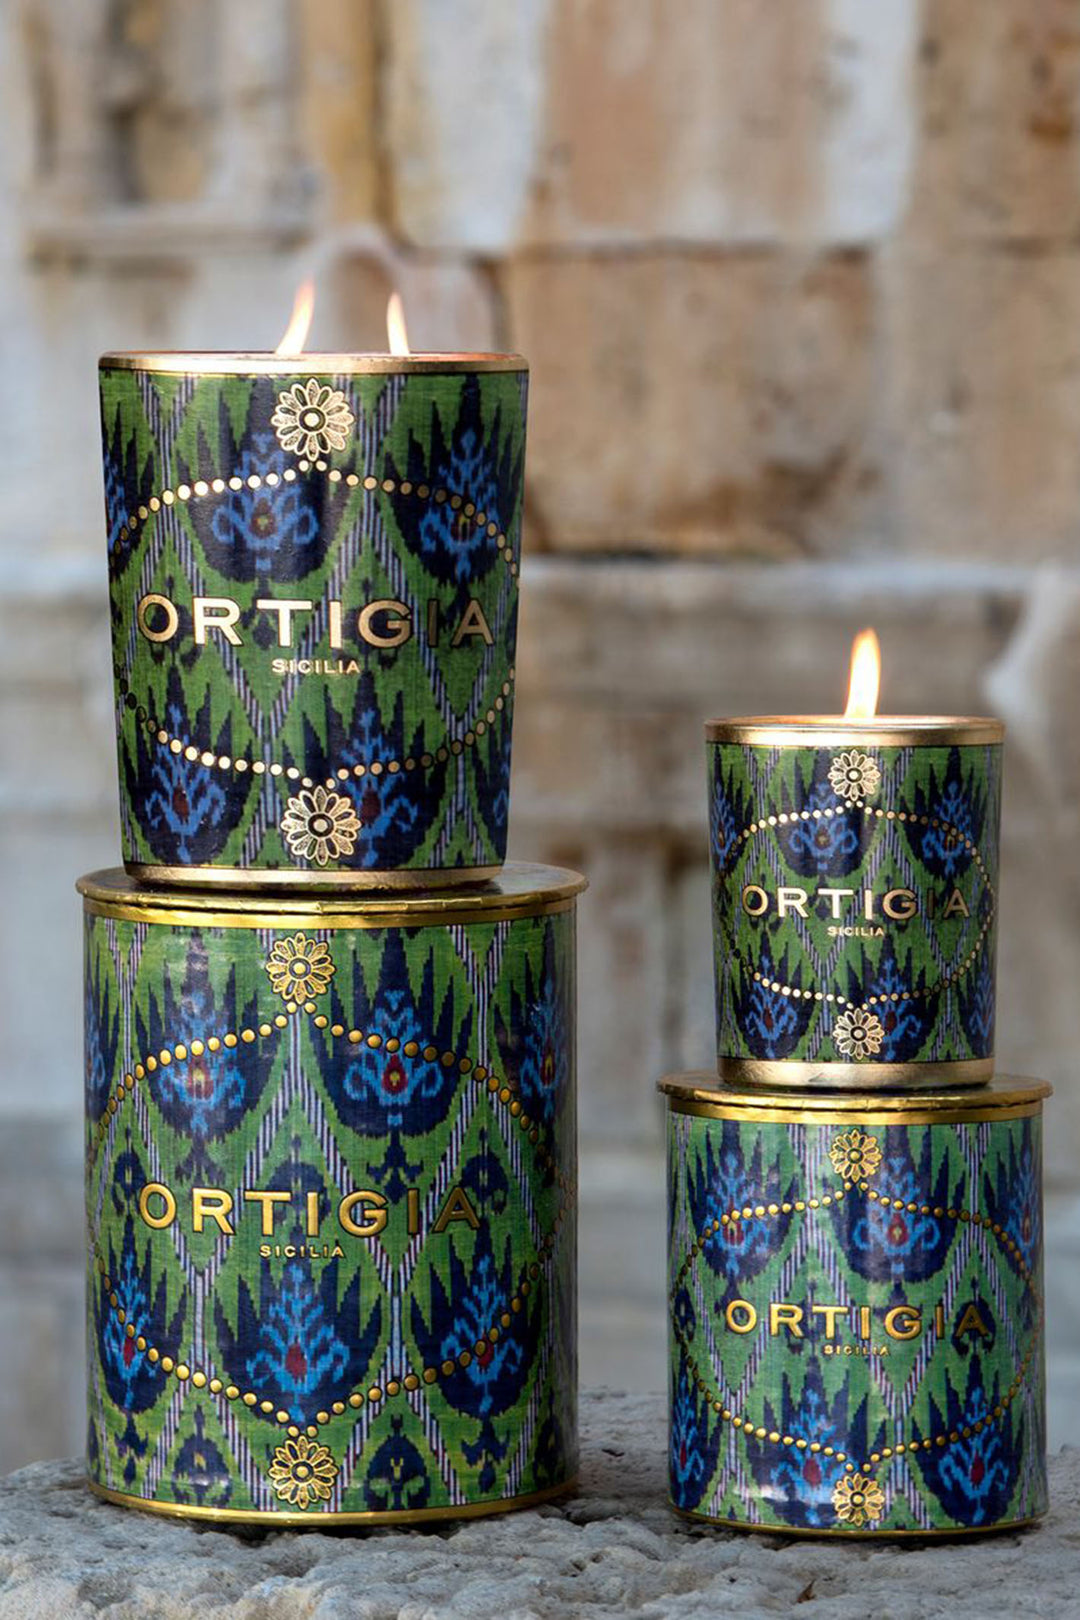 Ortigia Sicilia Bergamotto Decorated Candle Medium - Olivia Grace Fashion